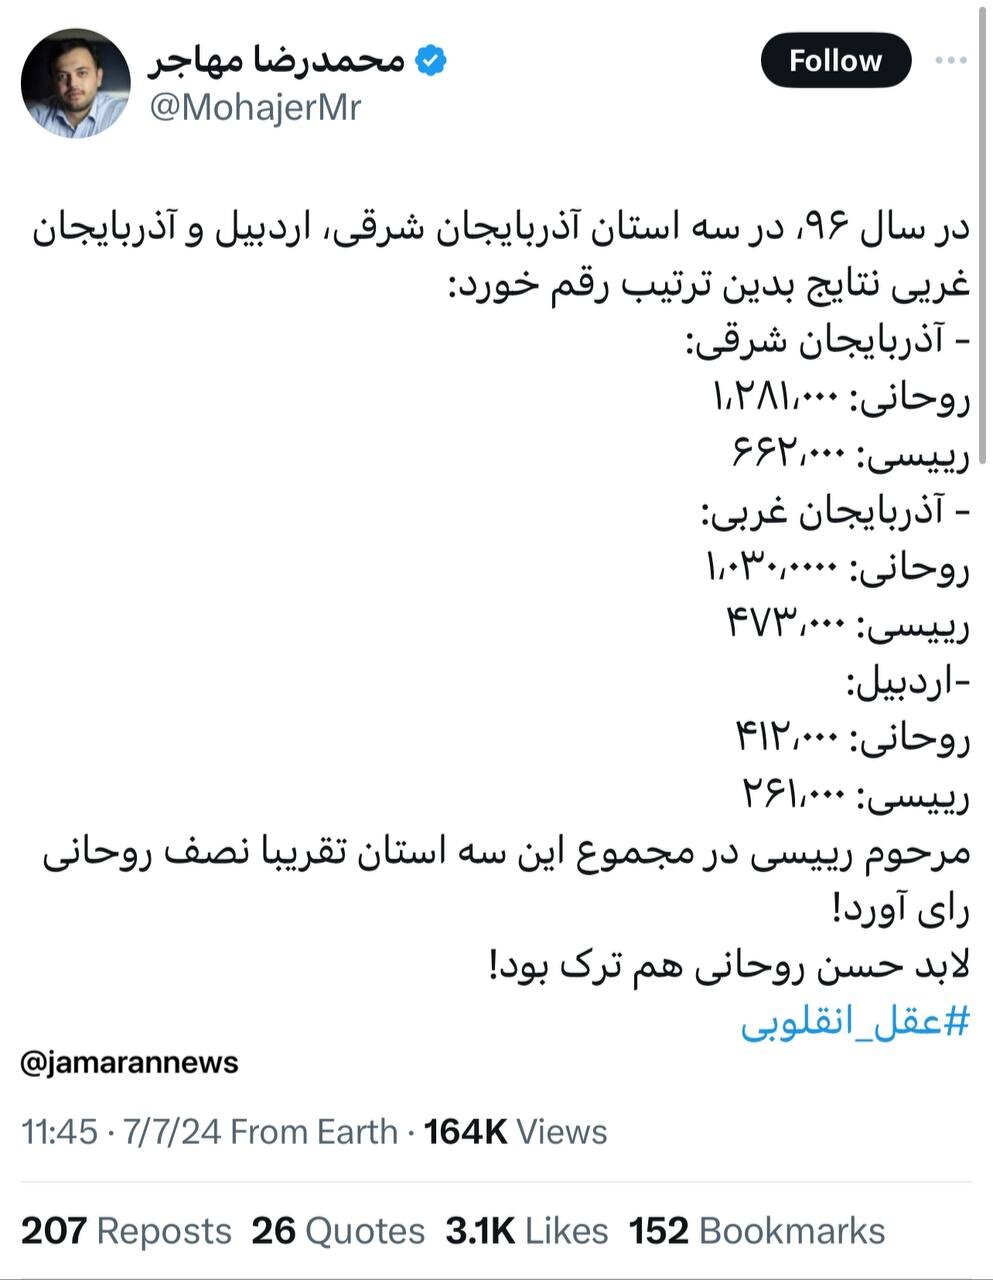 در انتخابات ۹۶ مجموع رأی مرحوم رئیسی در ۳ استان ترک زبان رأی نصف روحانی بود/ لابد حسن روحانی هم ترک بود!